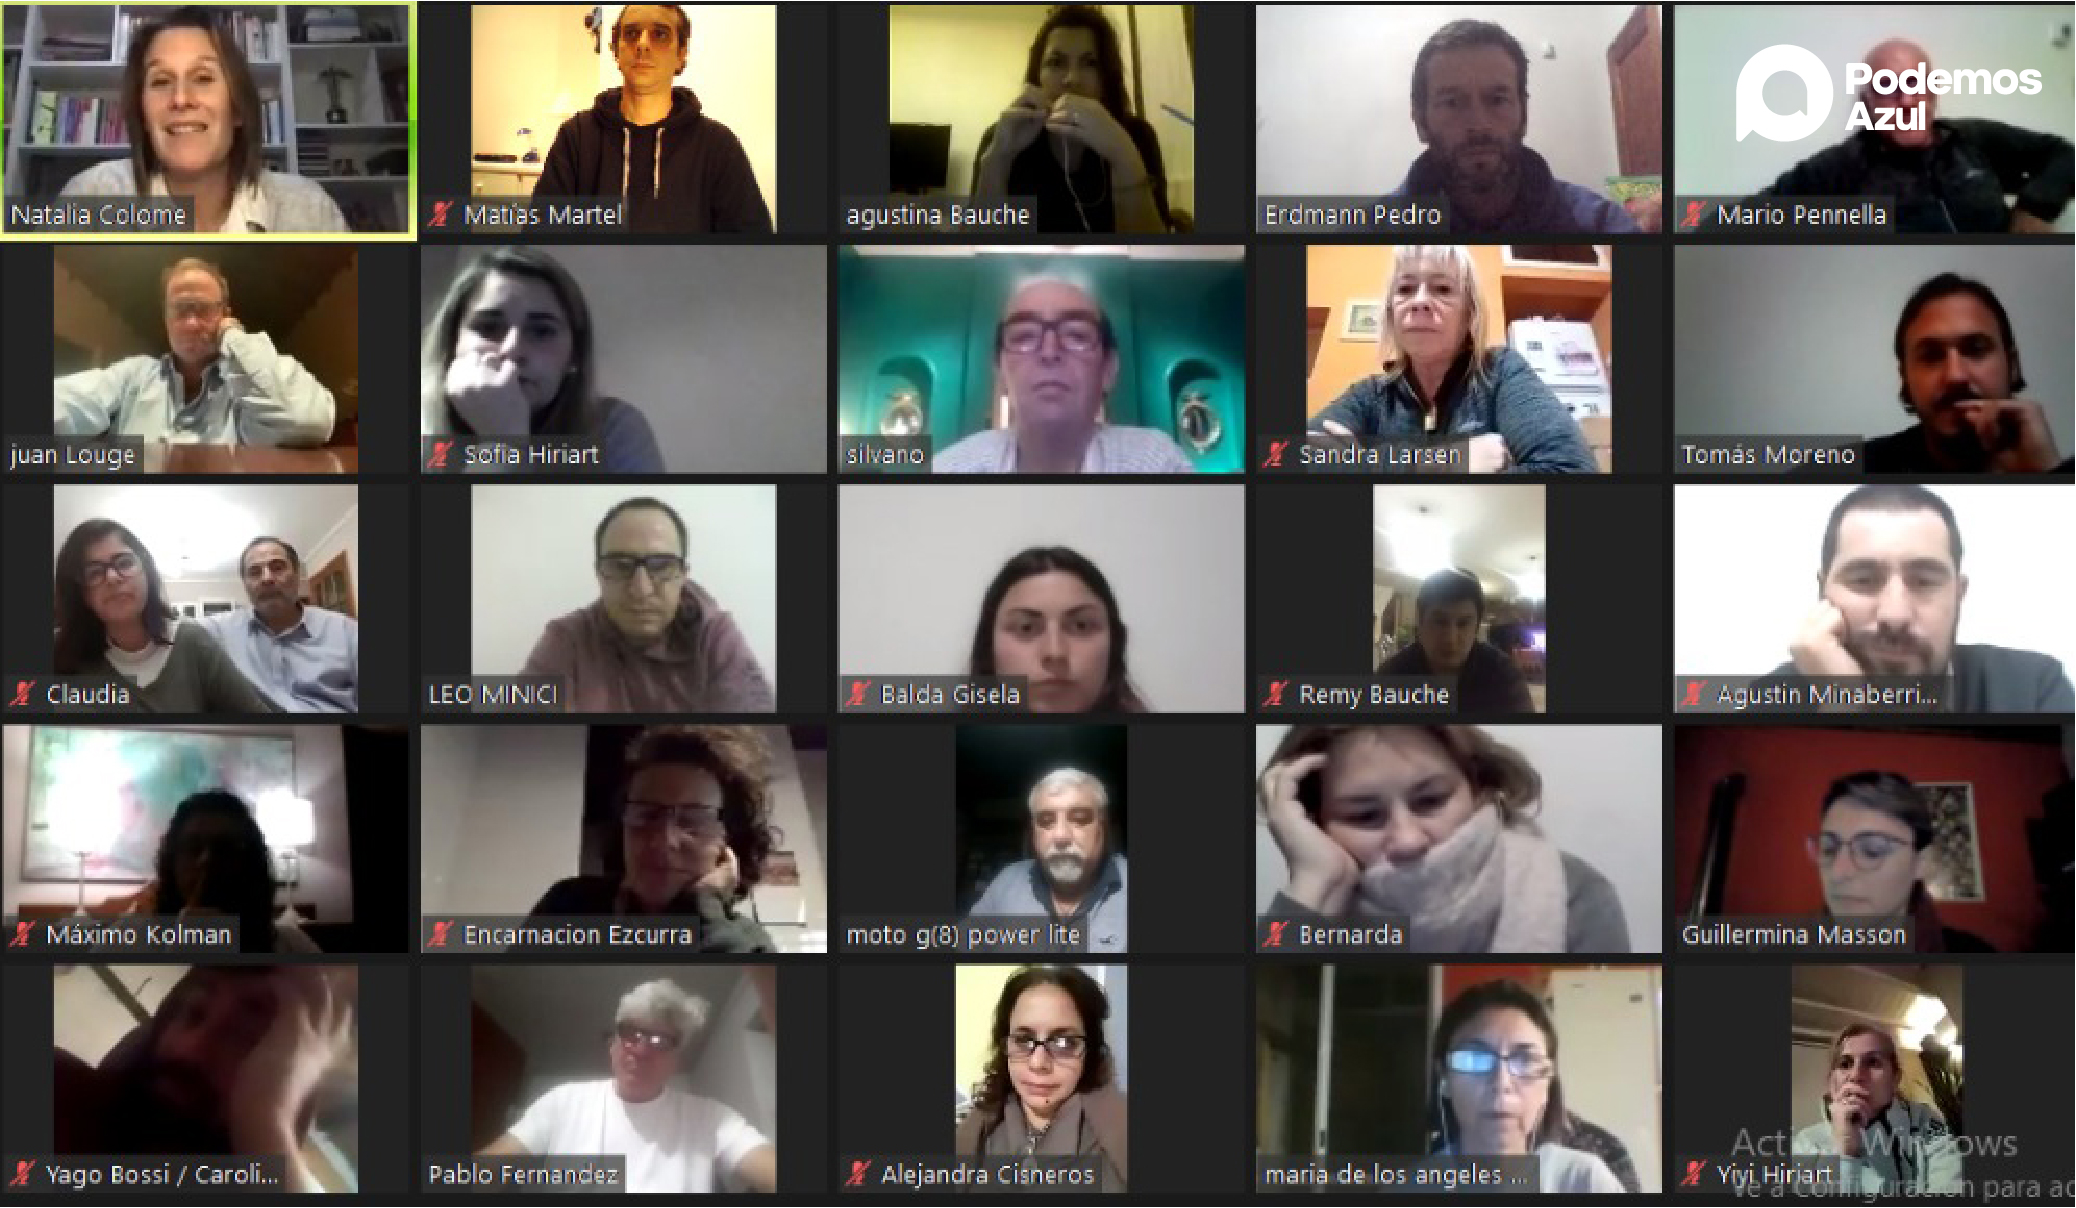 Imagen de reunion zoom de integrantes de Podemos Azul